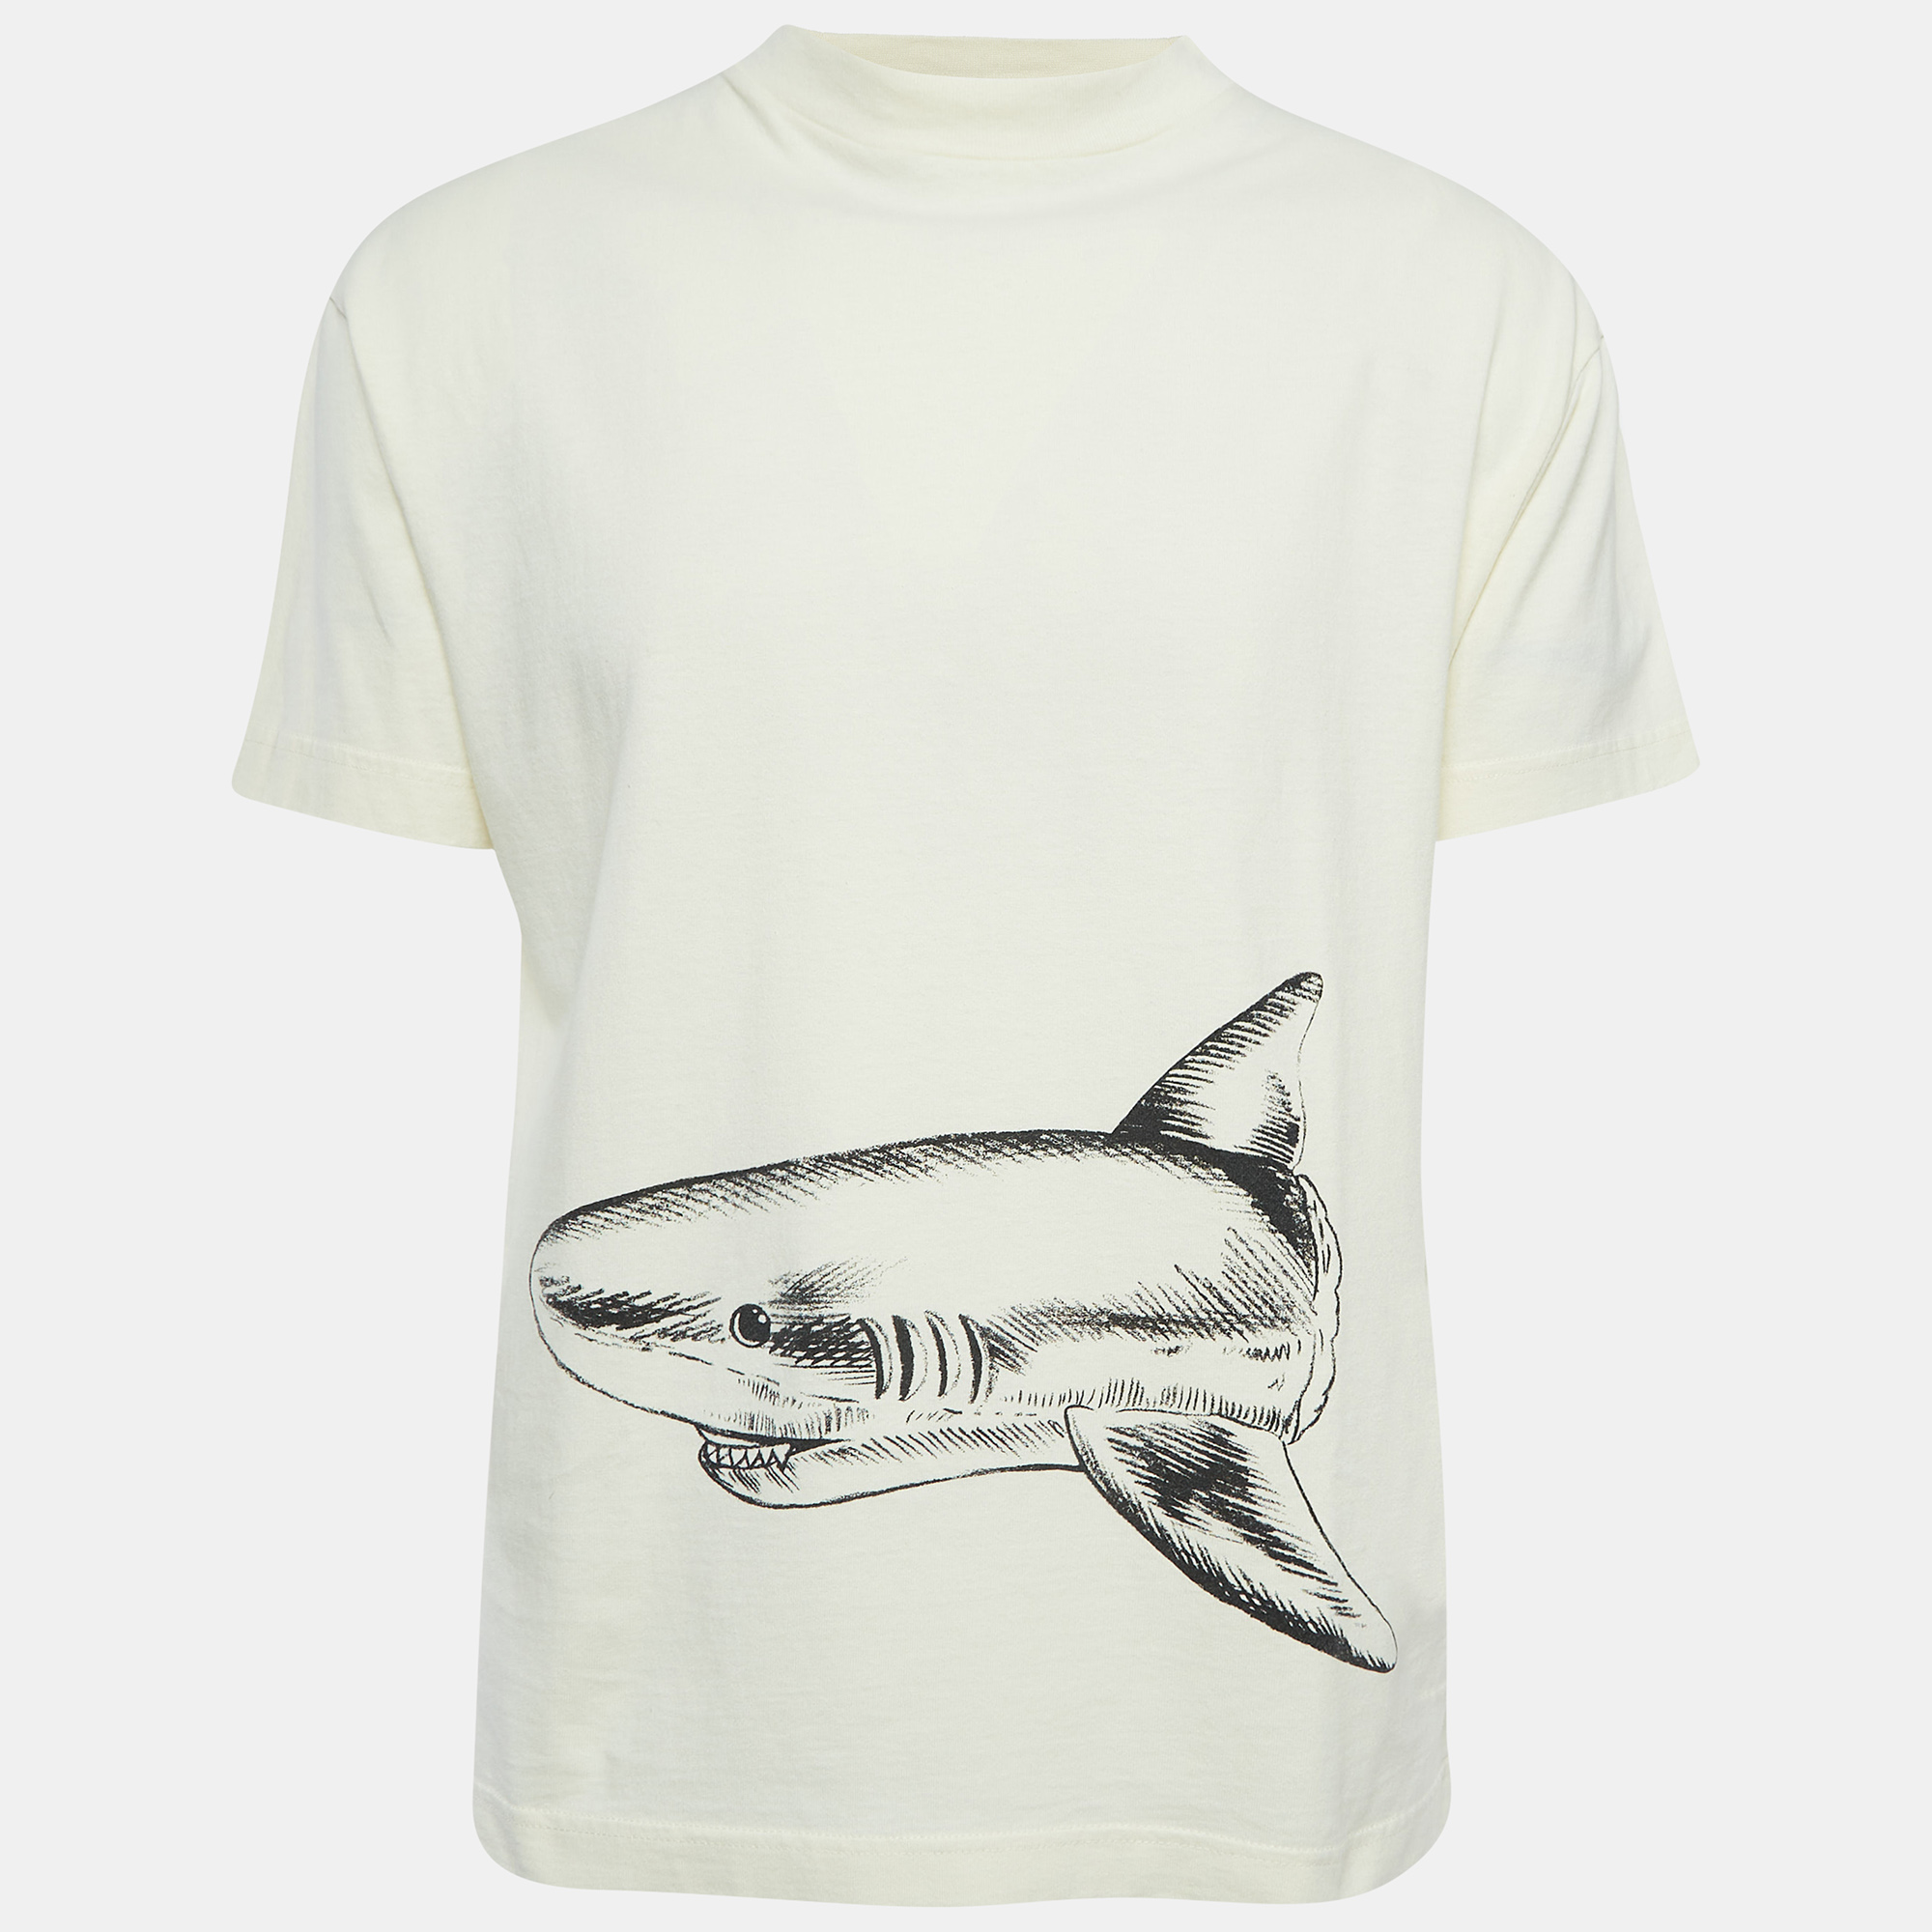 

Palm Angels Cream Broken Shark Print Cotton T-Shirt